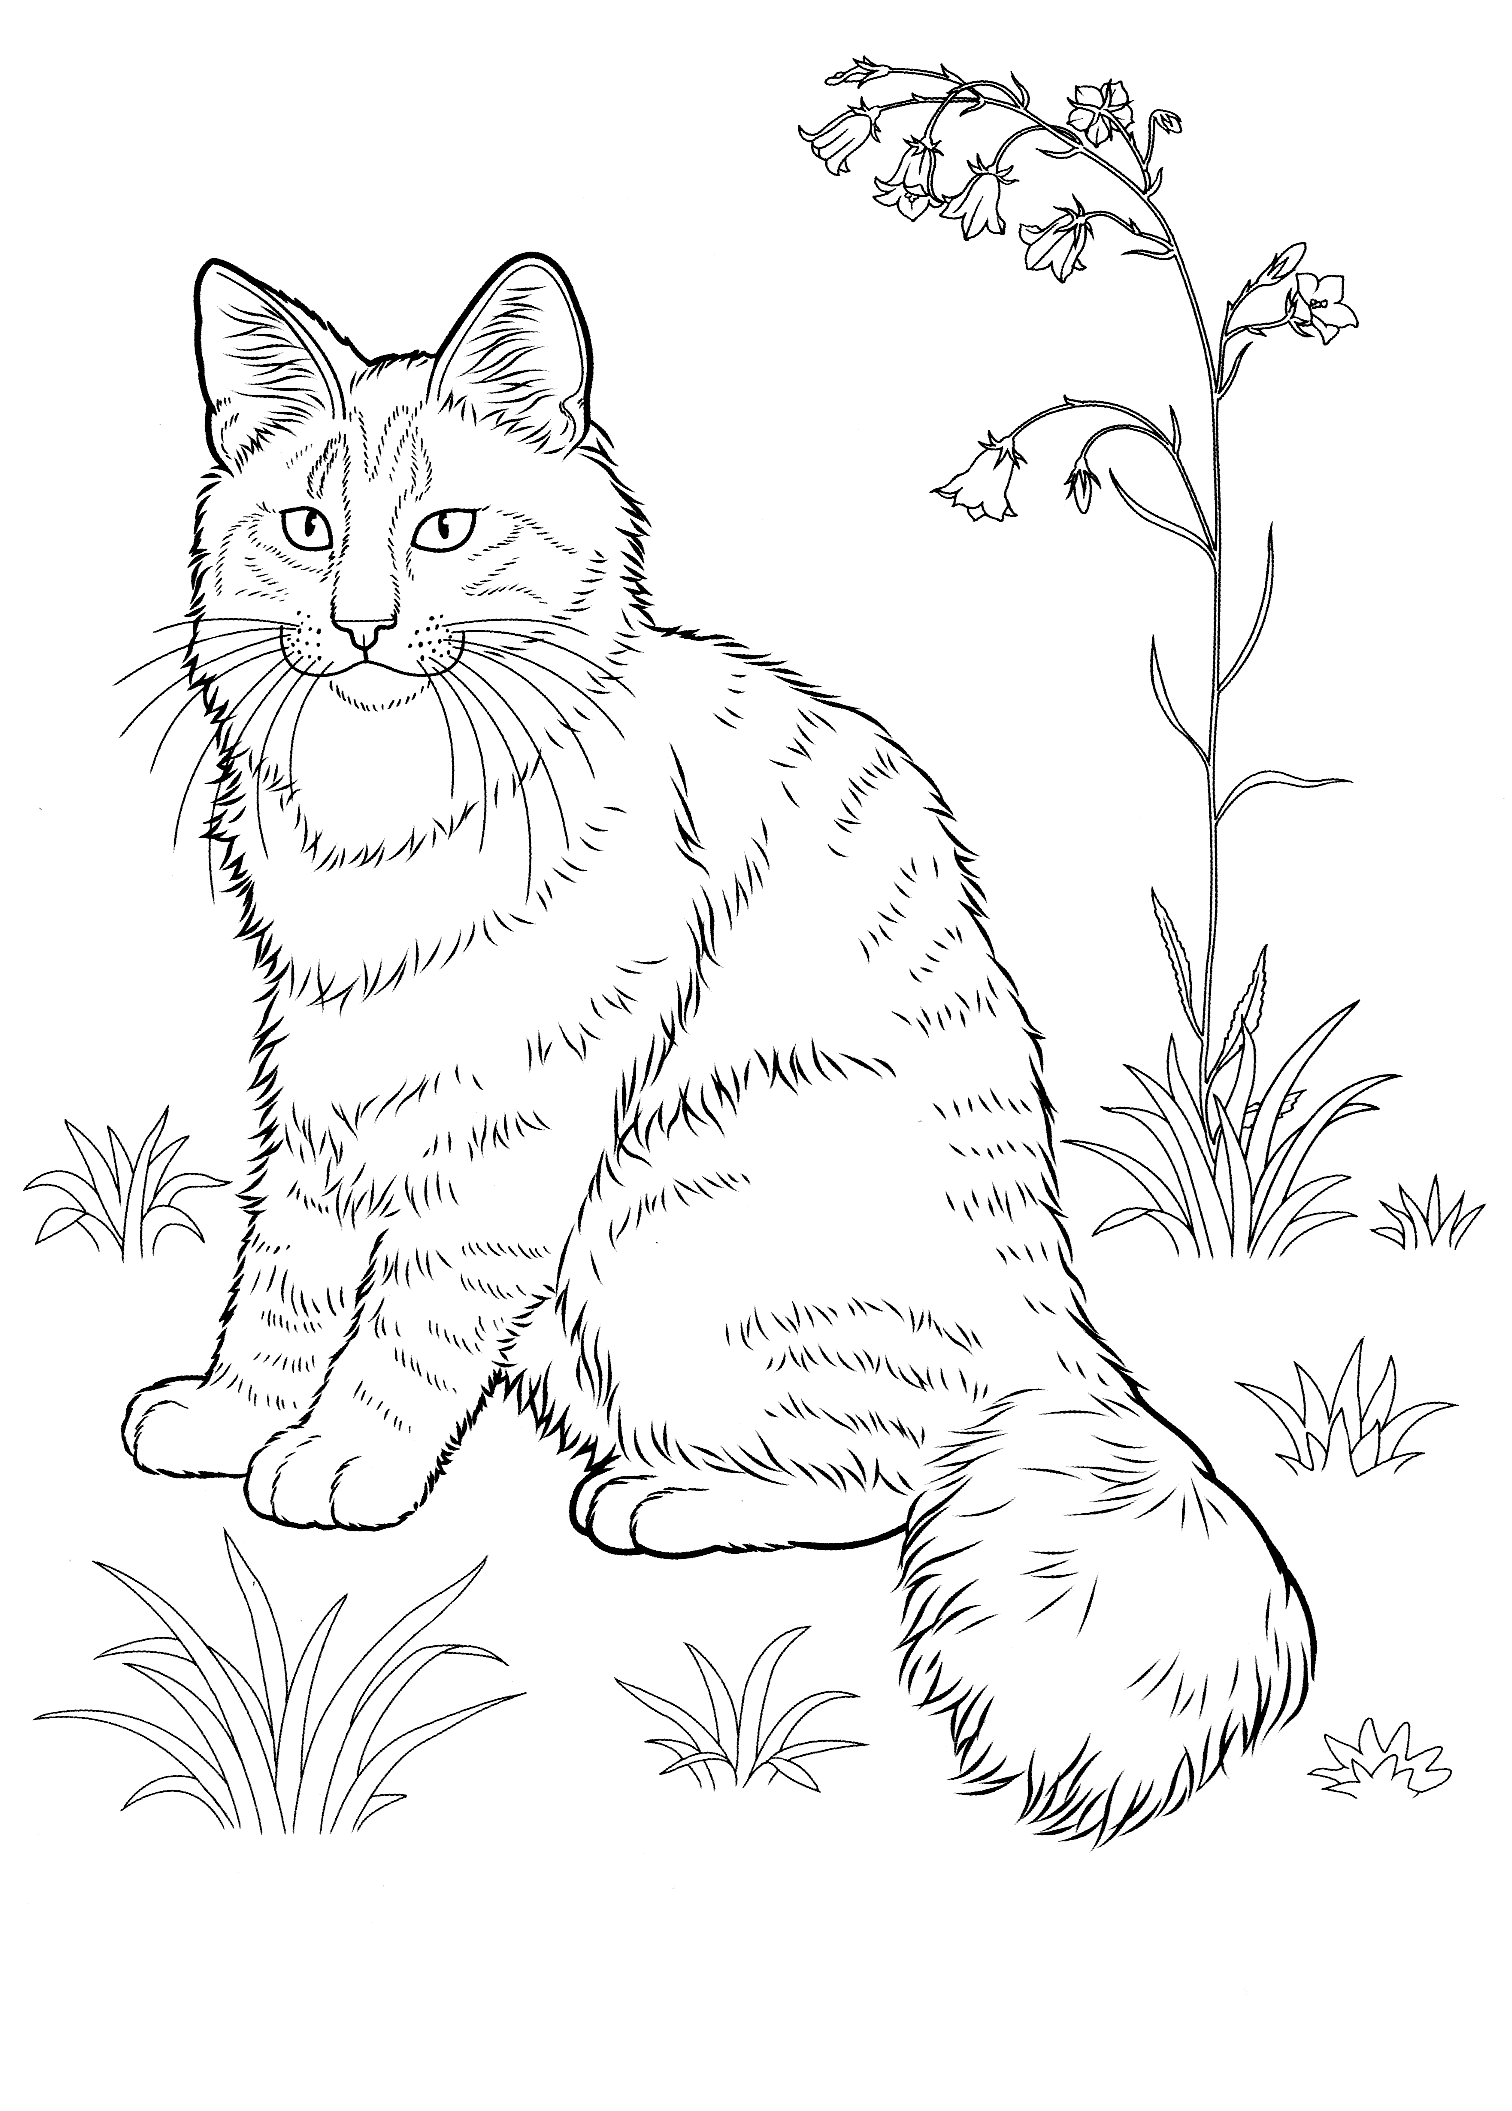 Kolorowanka kot bardzo napuszony siedzi na trawie obok dużego rozgałęzionego kwiatka